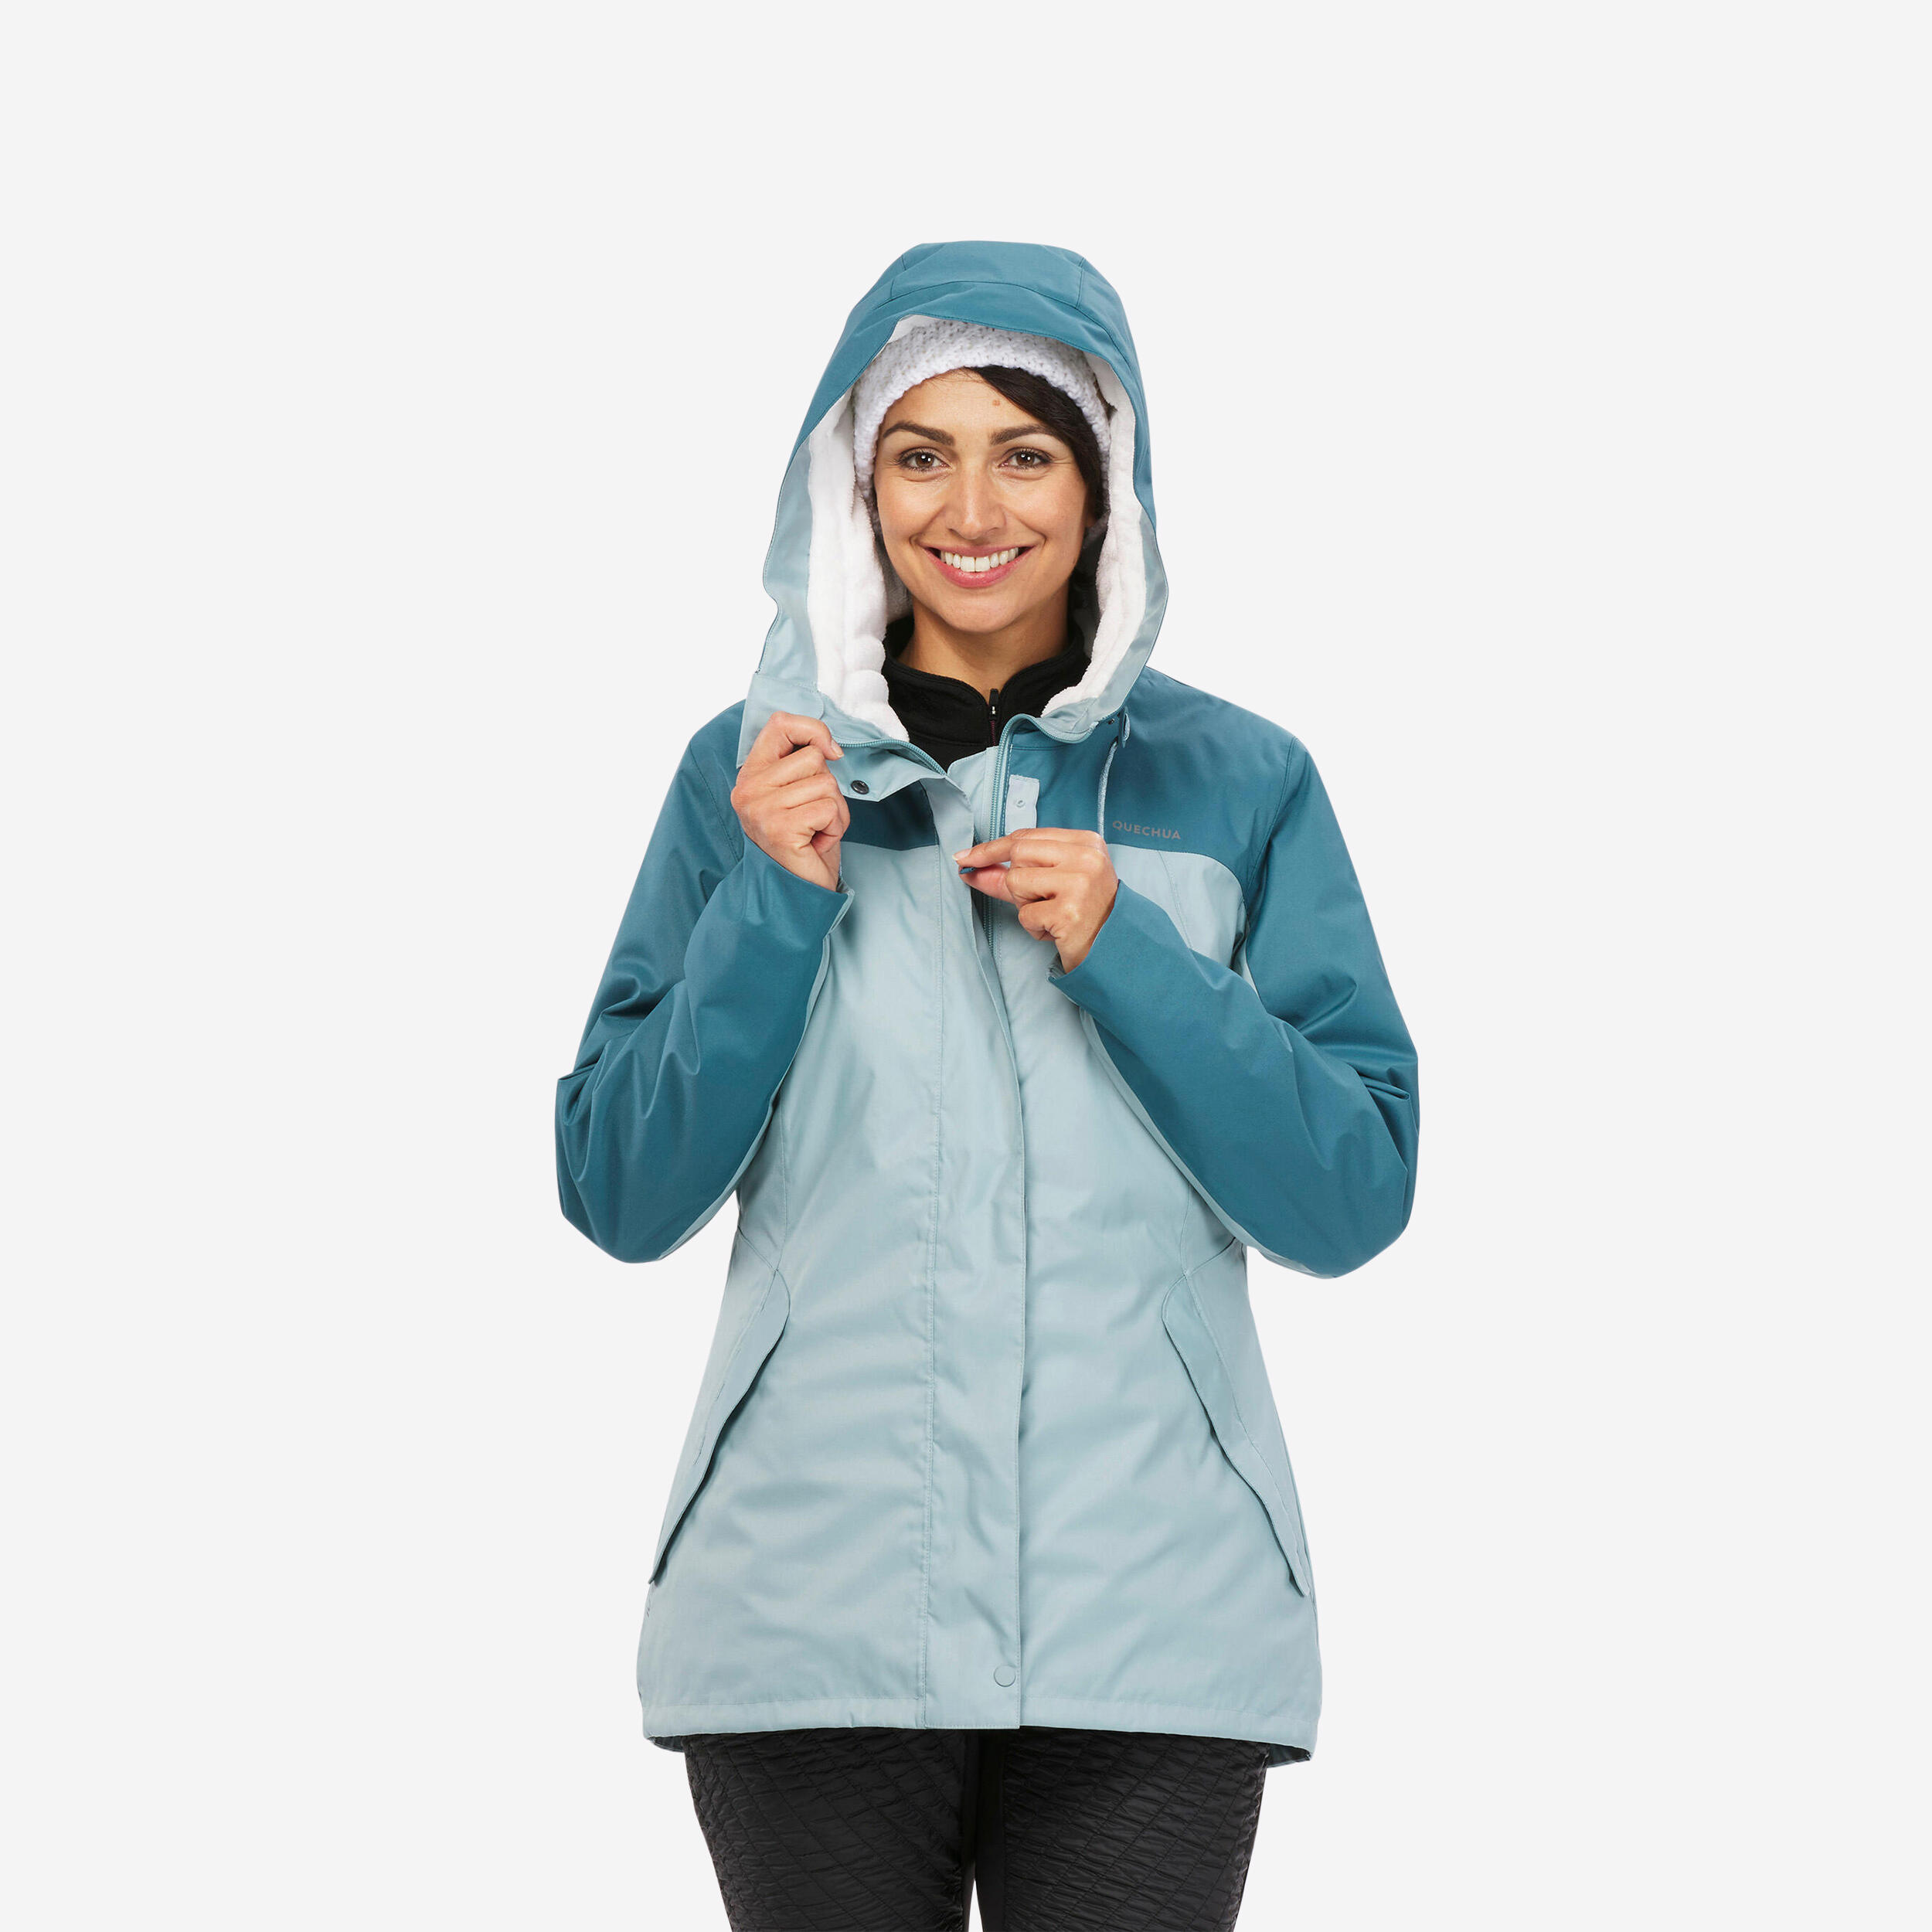 Women’s hiking waterproof winter jacket - SH500 -10°C 1/15